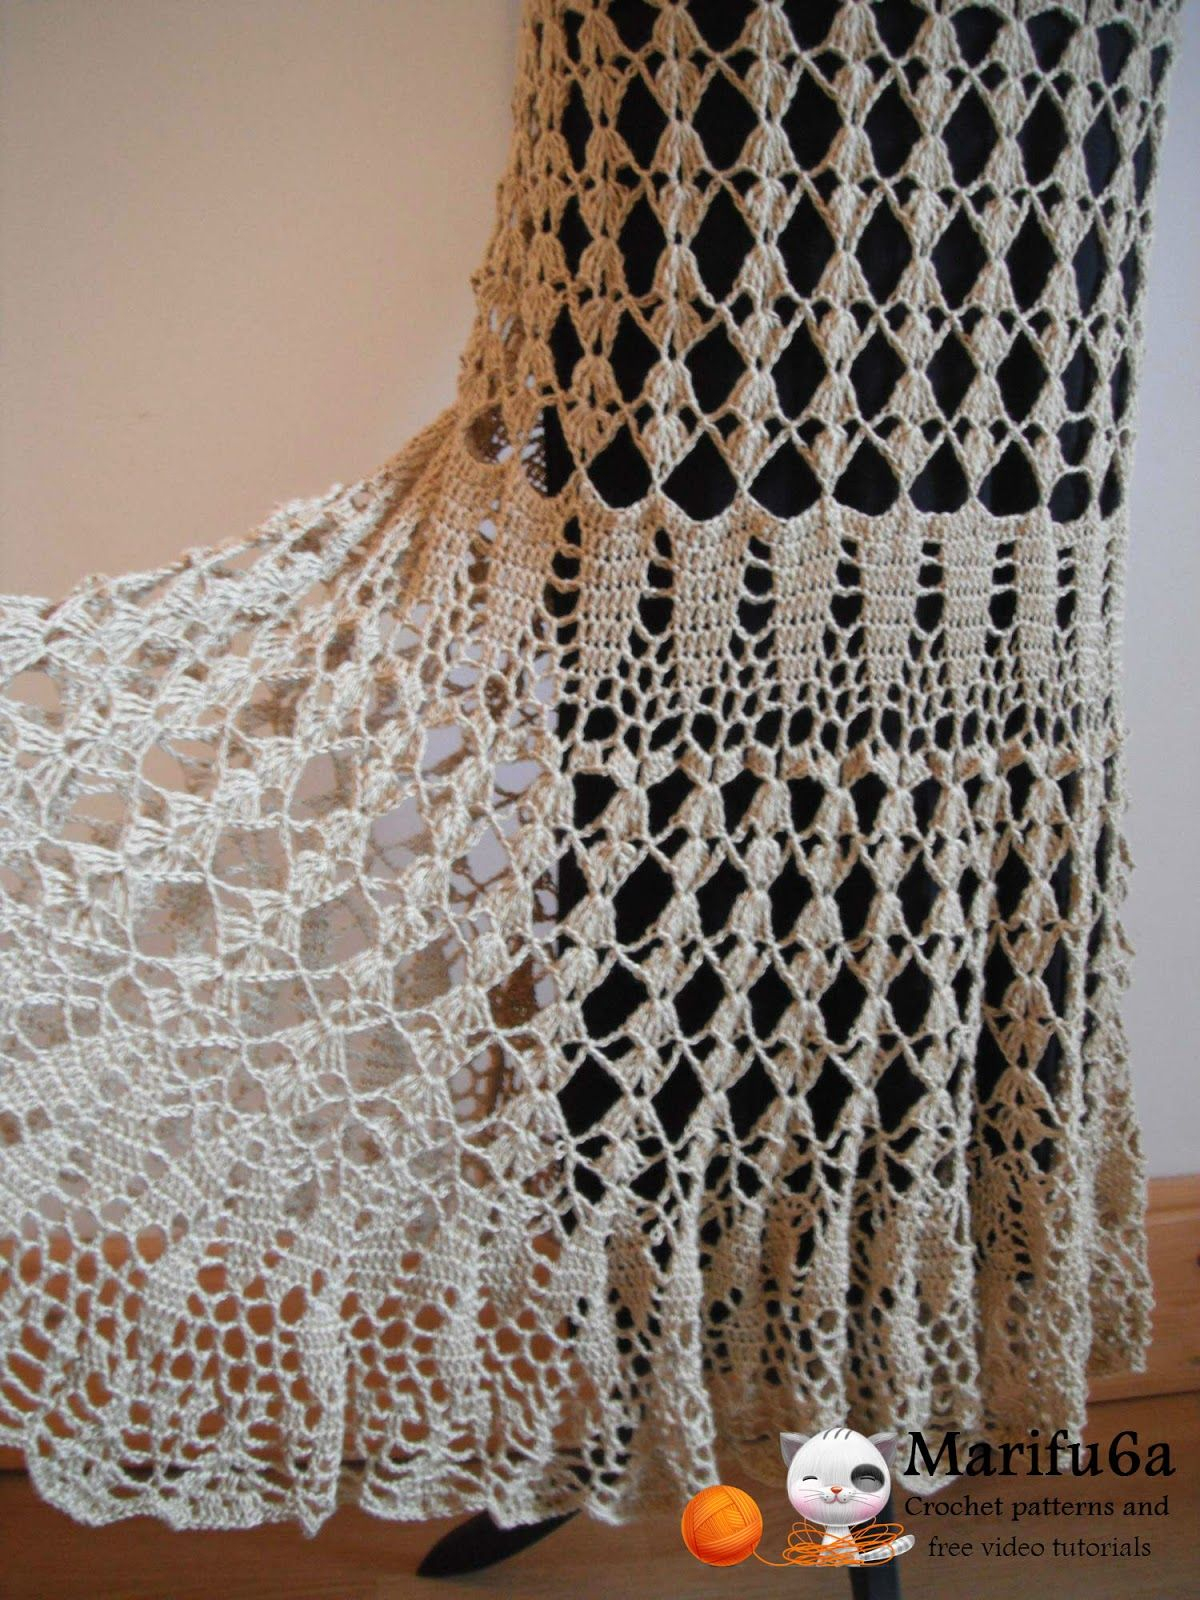 Crochet Maxi Skirt Pattern Free Crochet Patterns And Video Tutorials How To Crochet Maxi Skirt